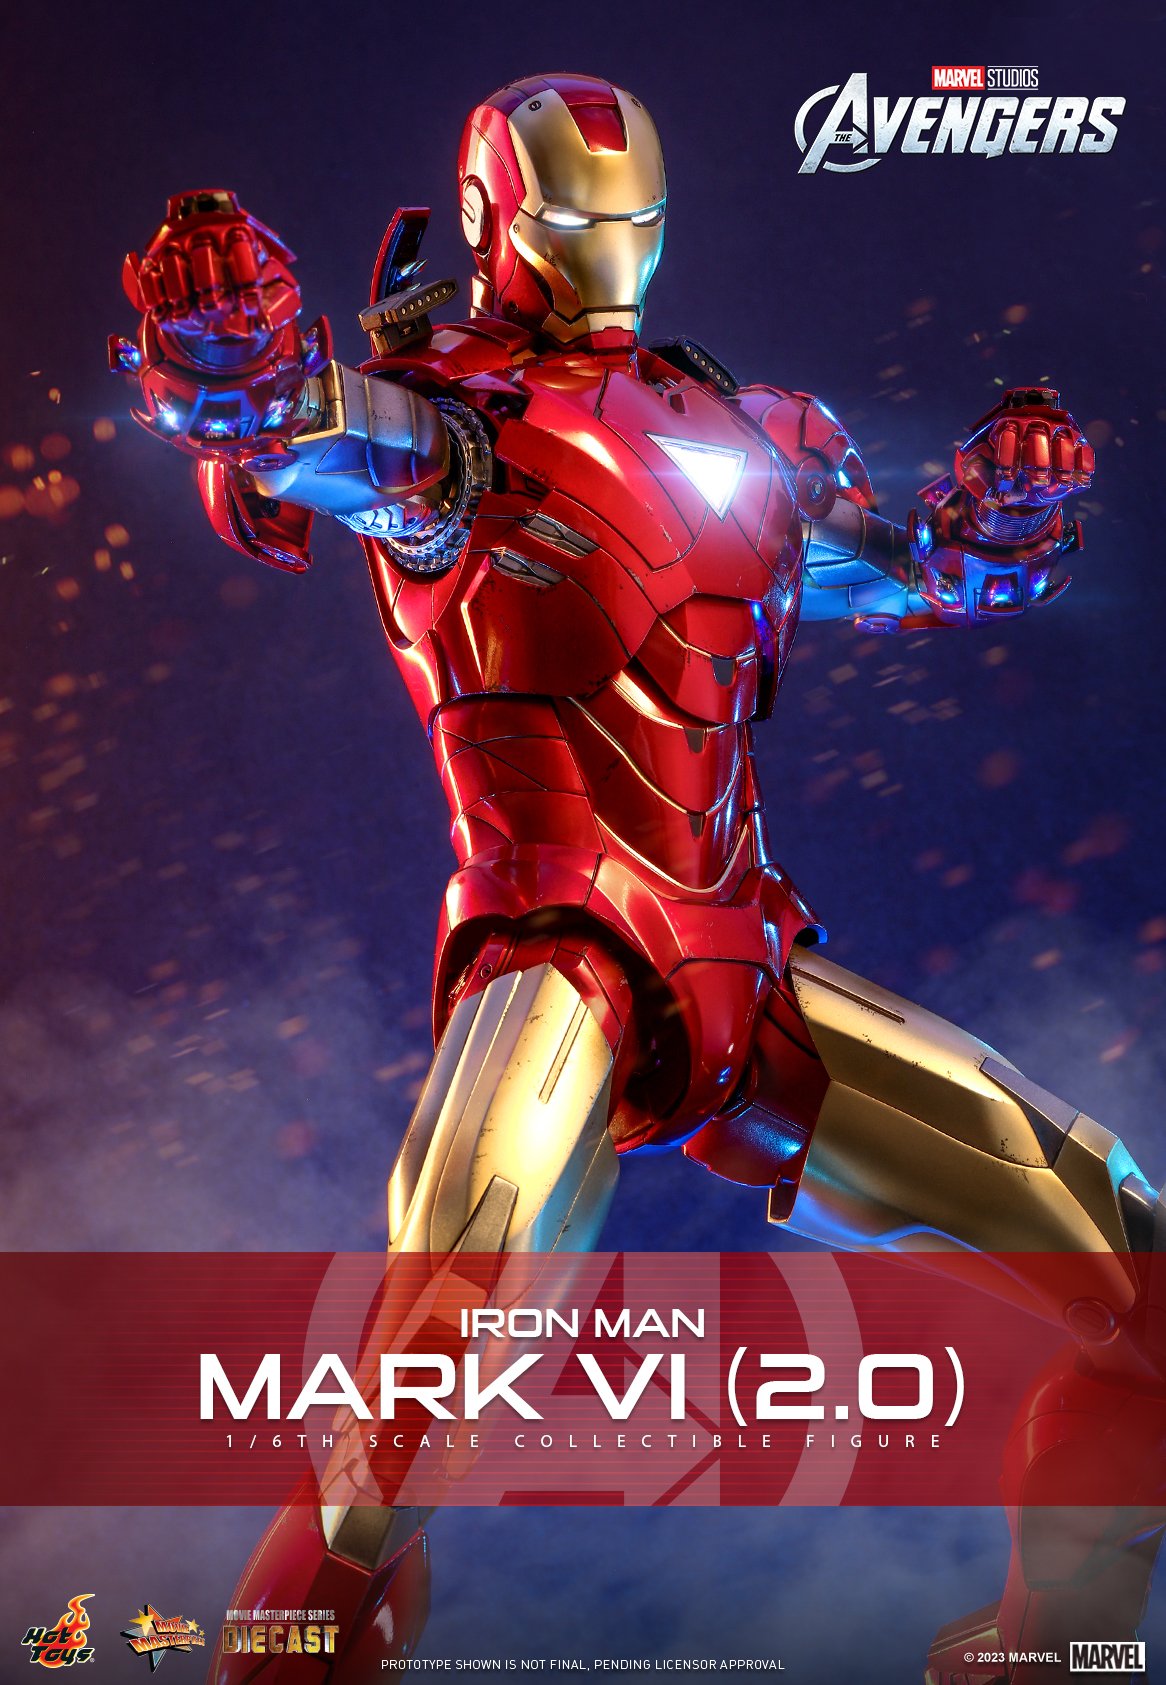 Đối với những người yêu thích Iron Man, việc đặt trước Hot Toys Iron Man Mark VI là một điều không thể bỏ qua. Xem hình ảnh liên quan để cảm nhận được vẻ đẹp và tính năng của sản phẩm đầy ấn tượng này.